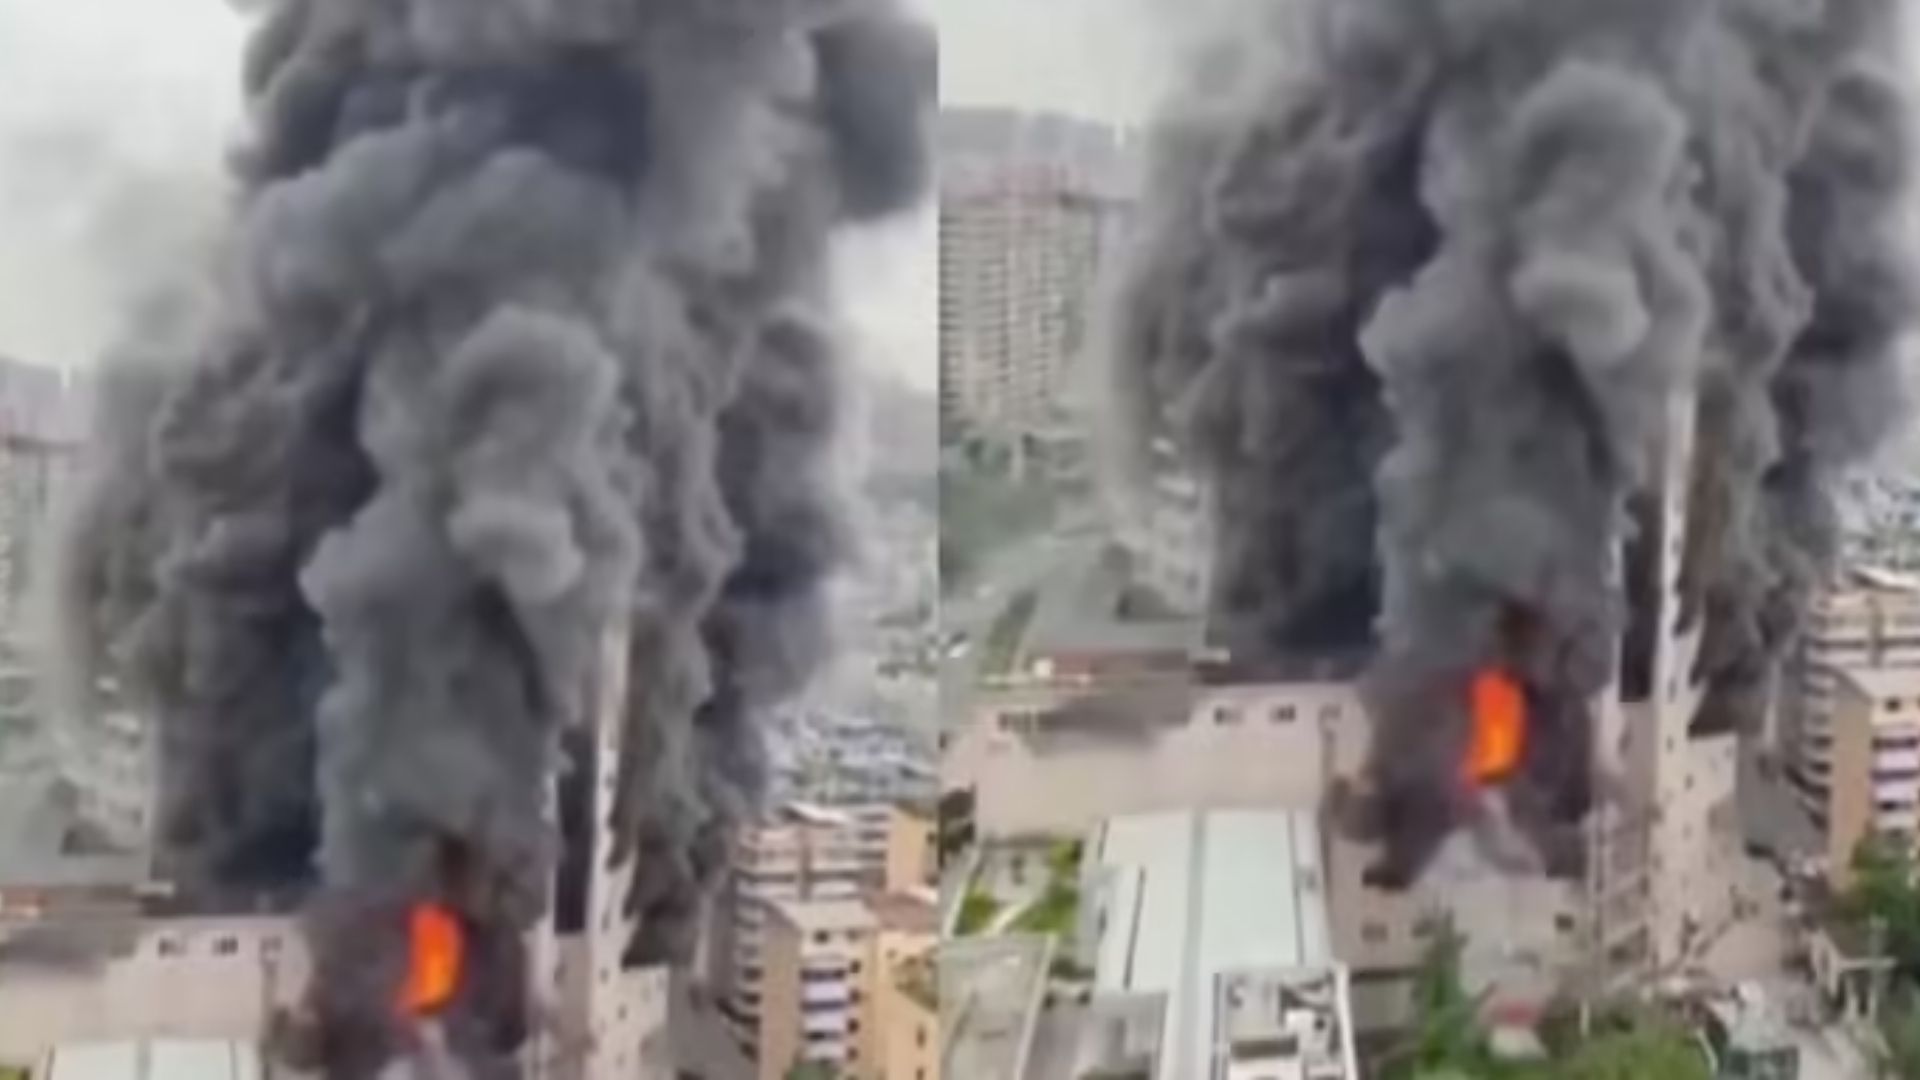  चीन में Shopping Mall में आग लगने से 16 लोगों की मौ+त, 